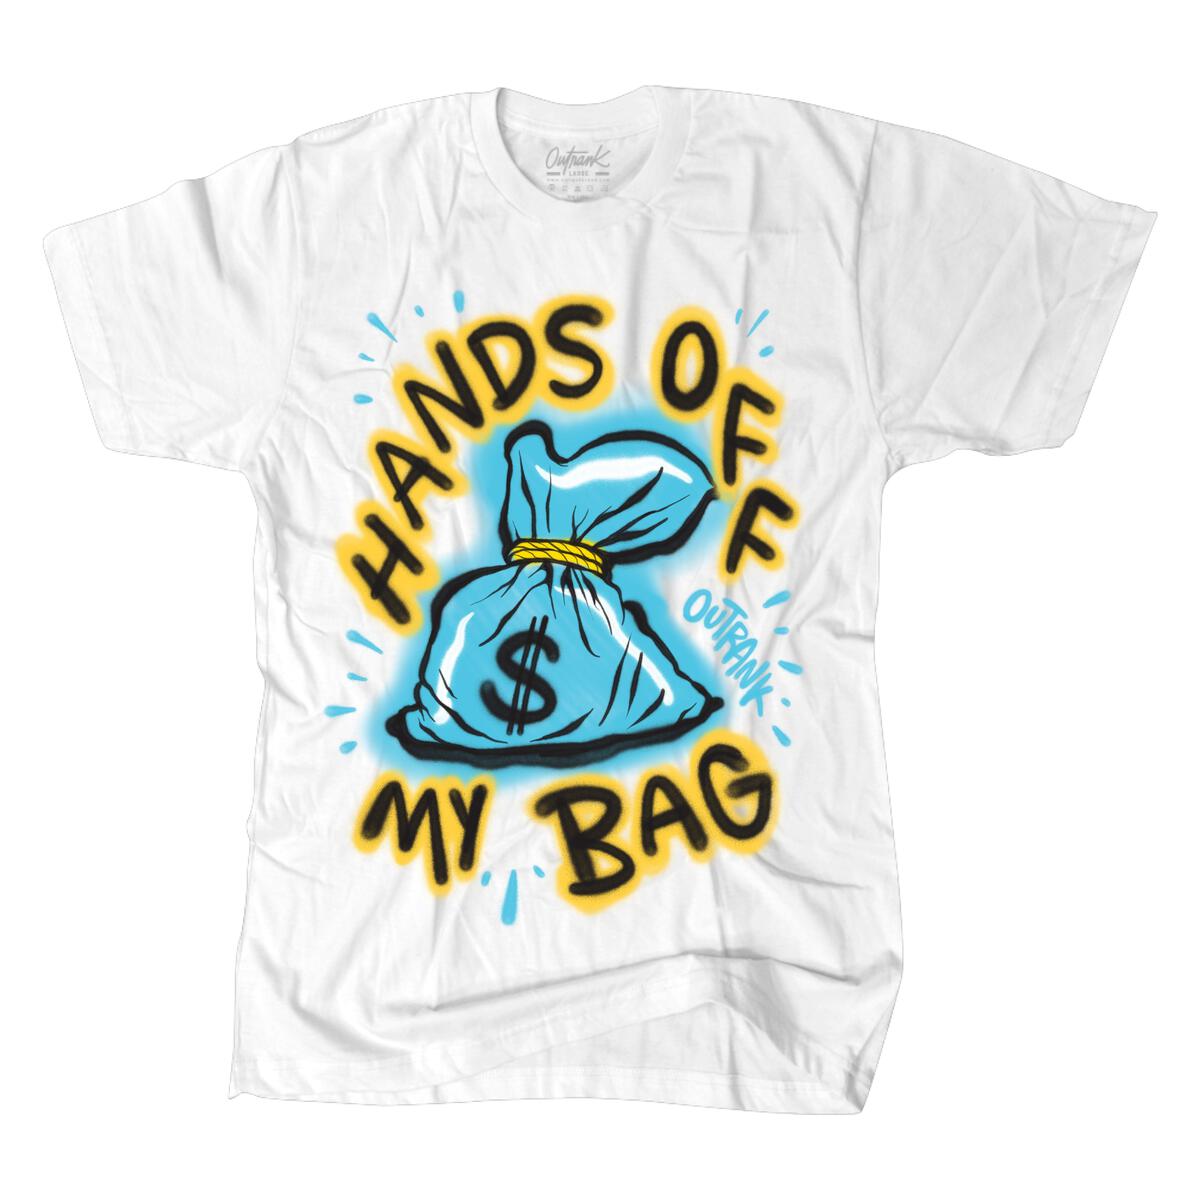 Hands Off My Bag T-Shirt